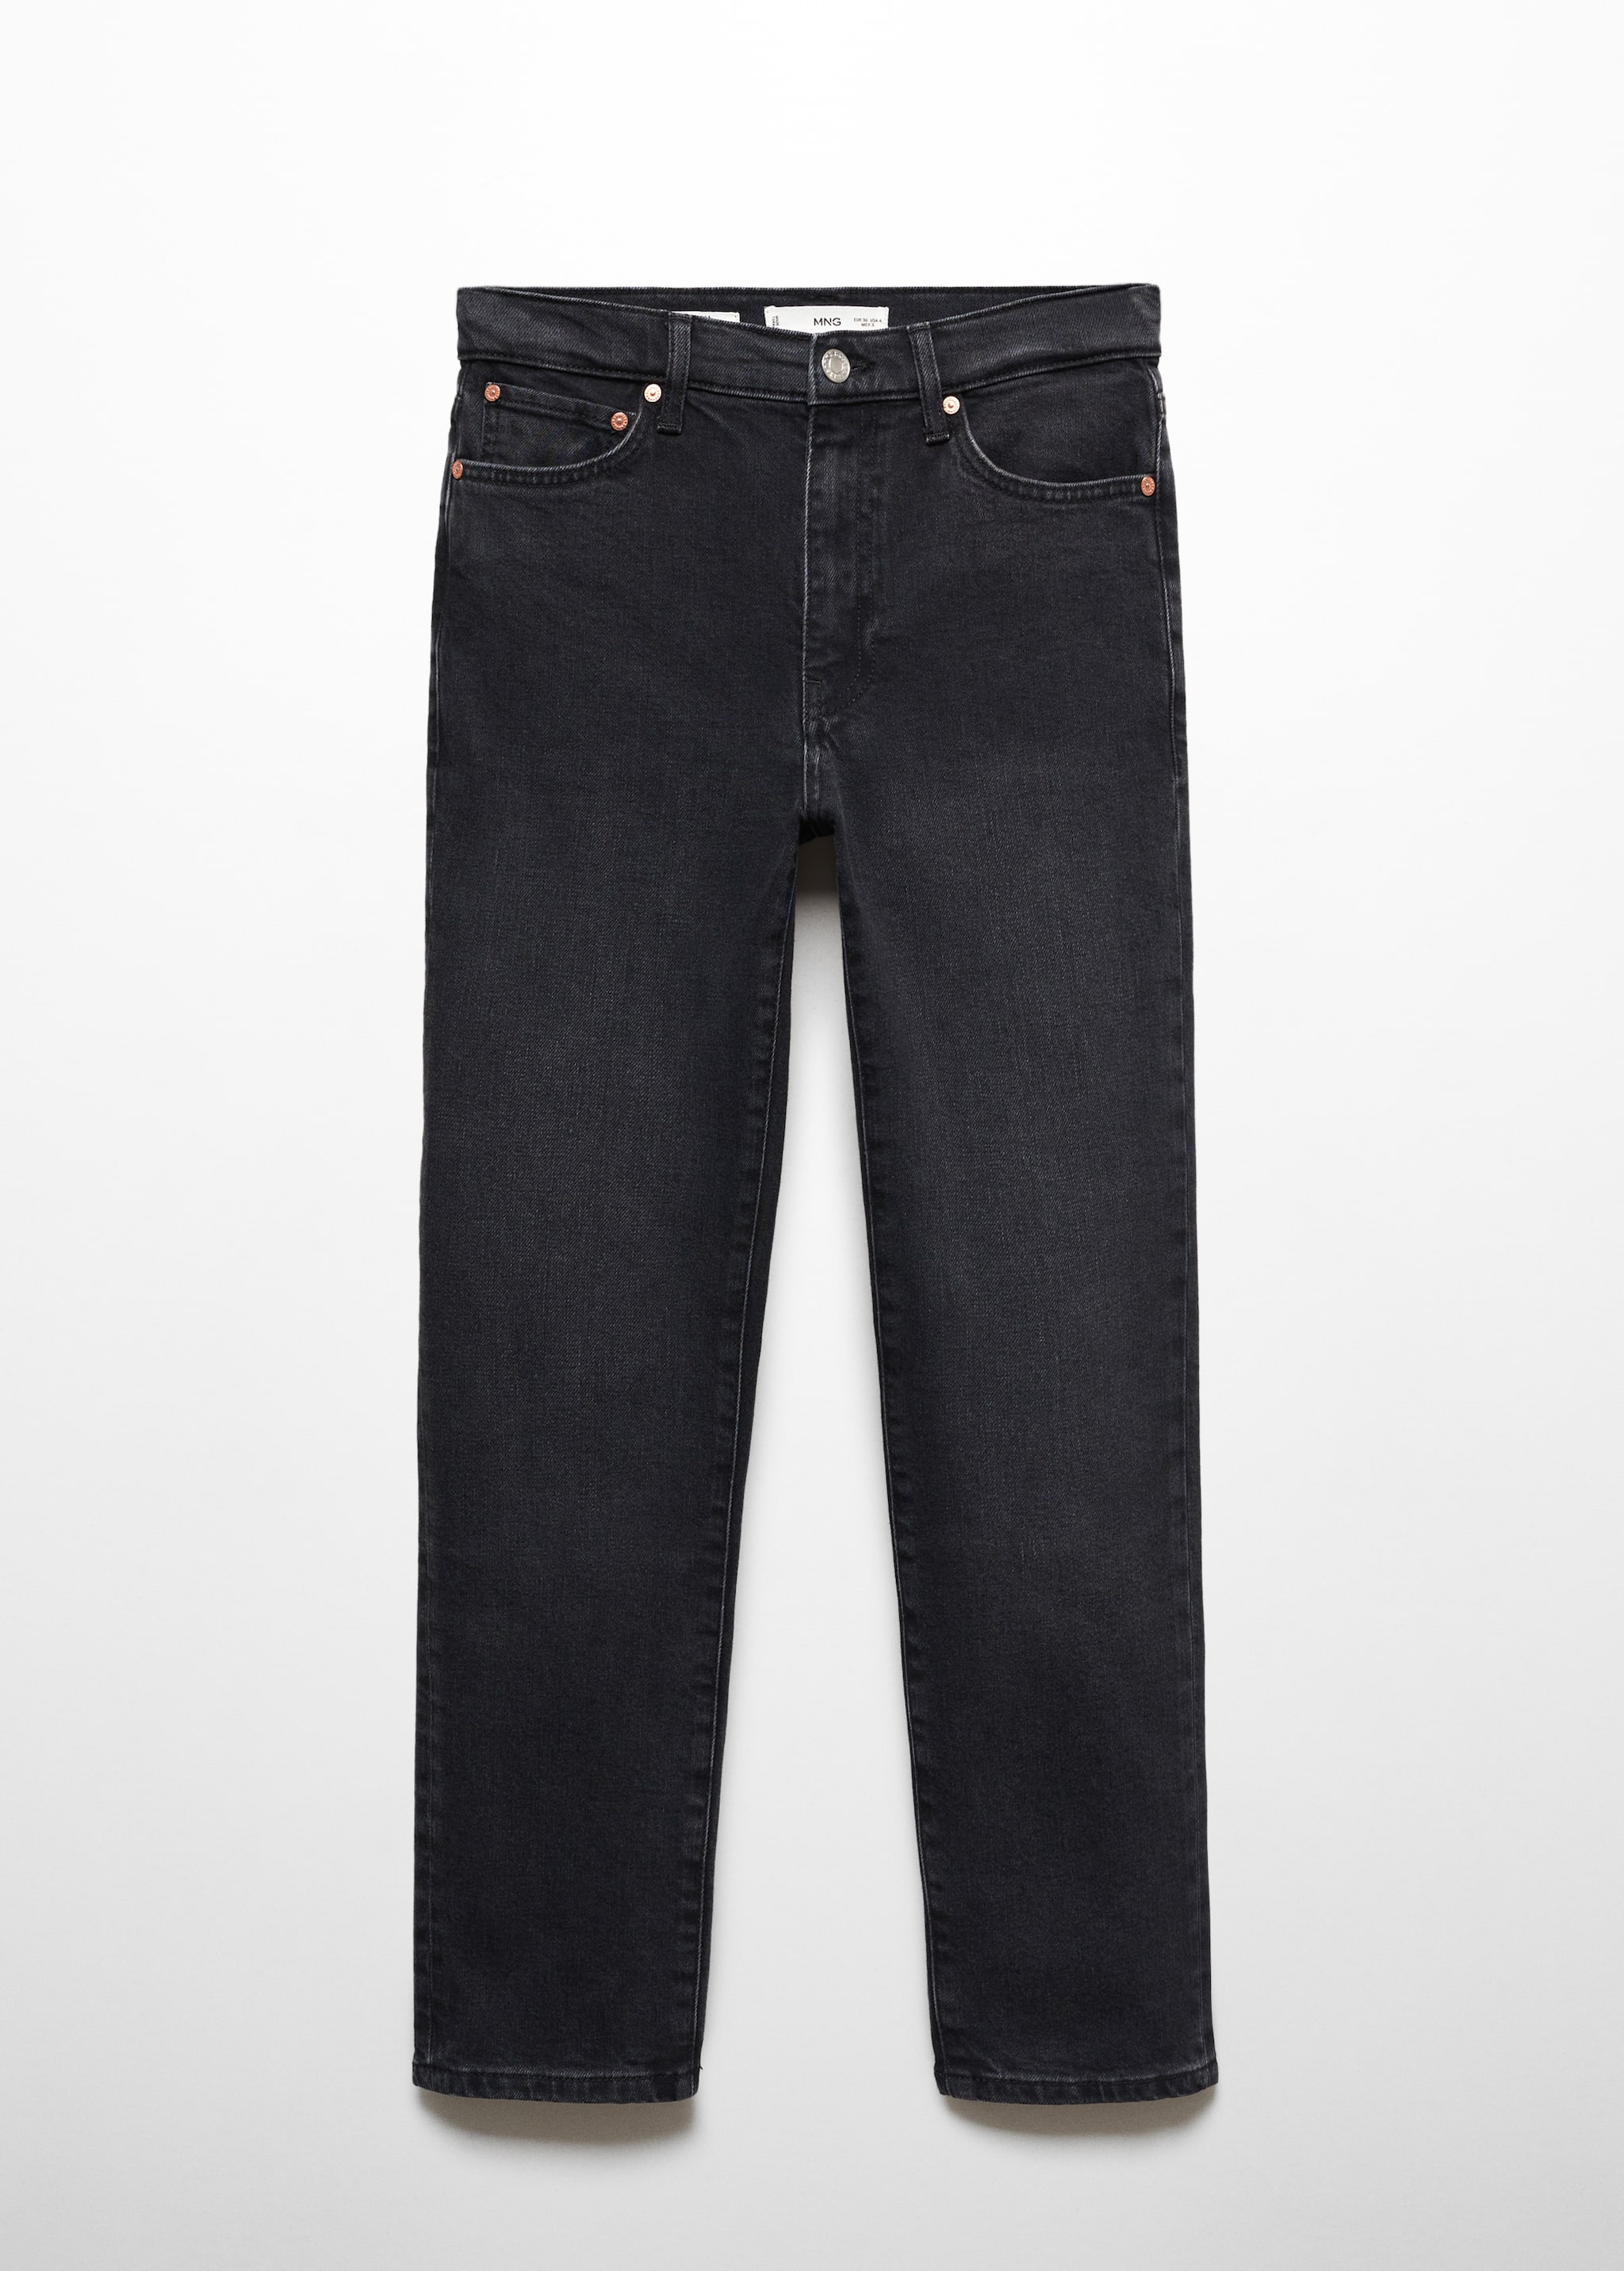 Укороченные джинсы slim - Изделие без модели